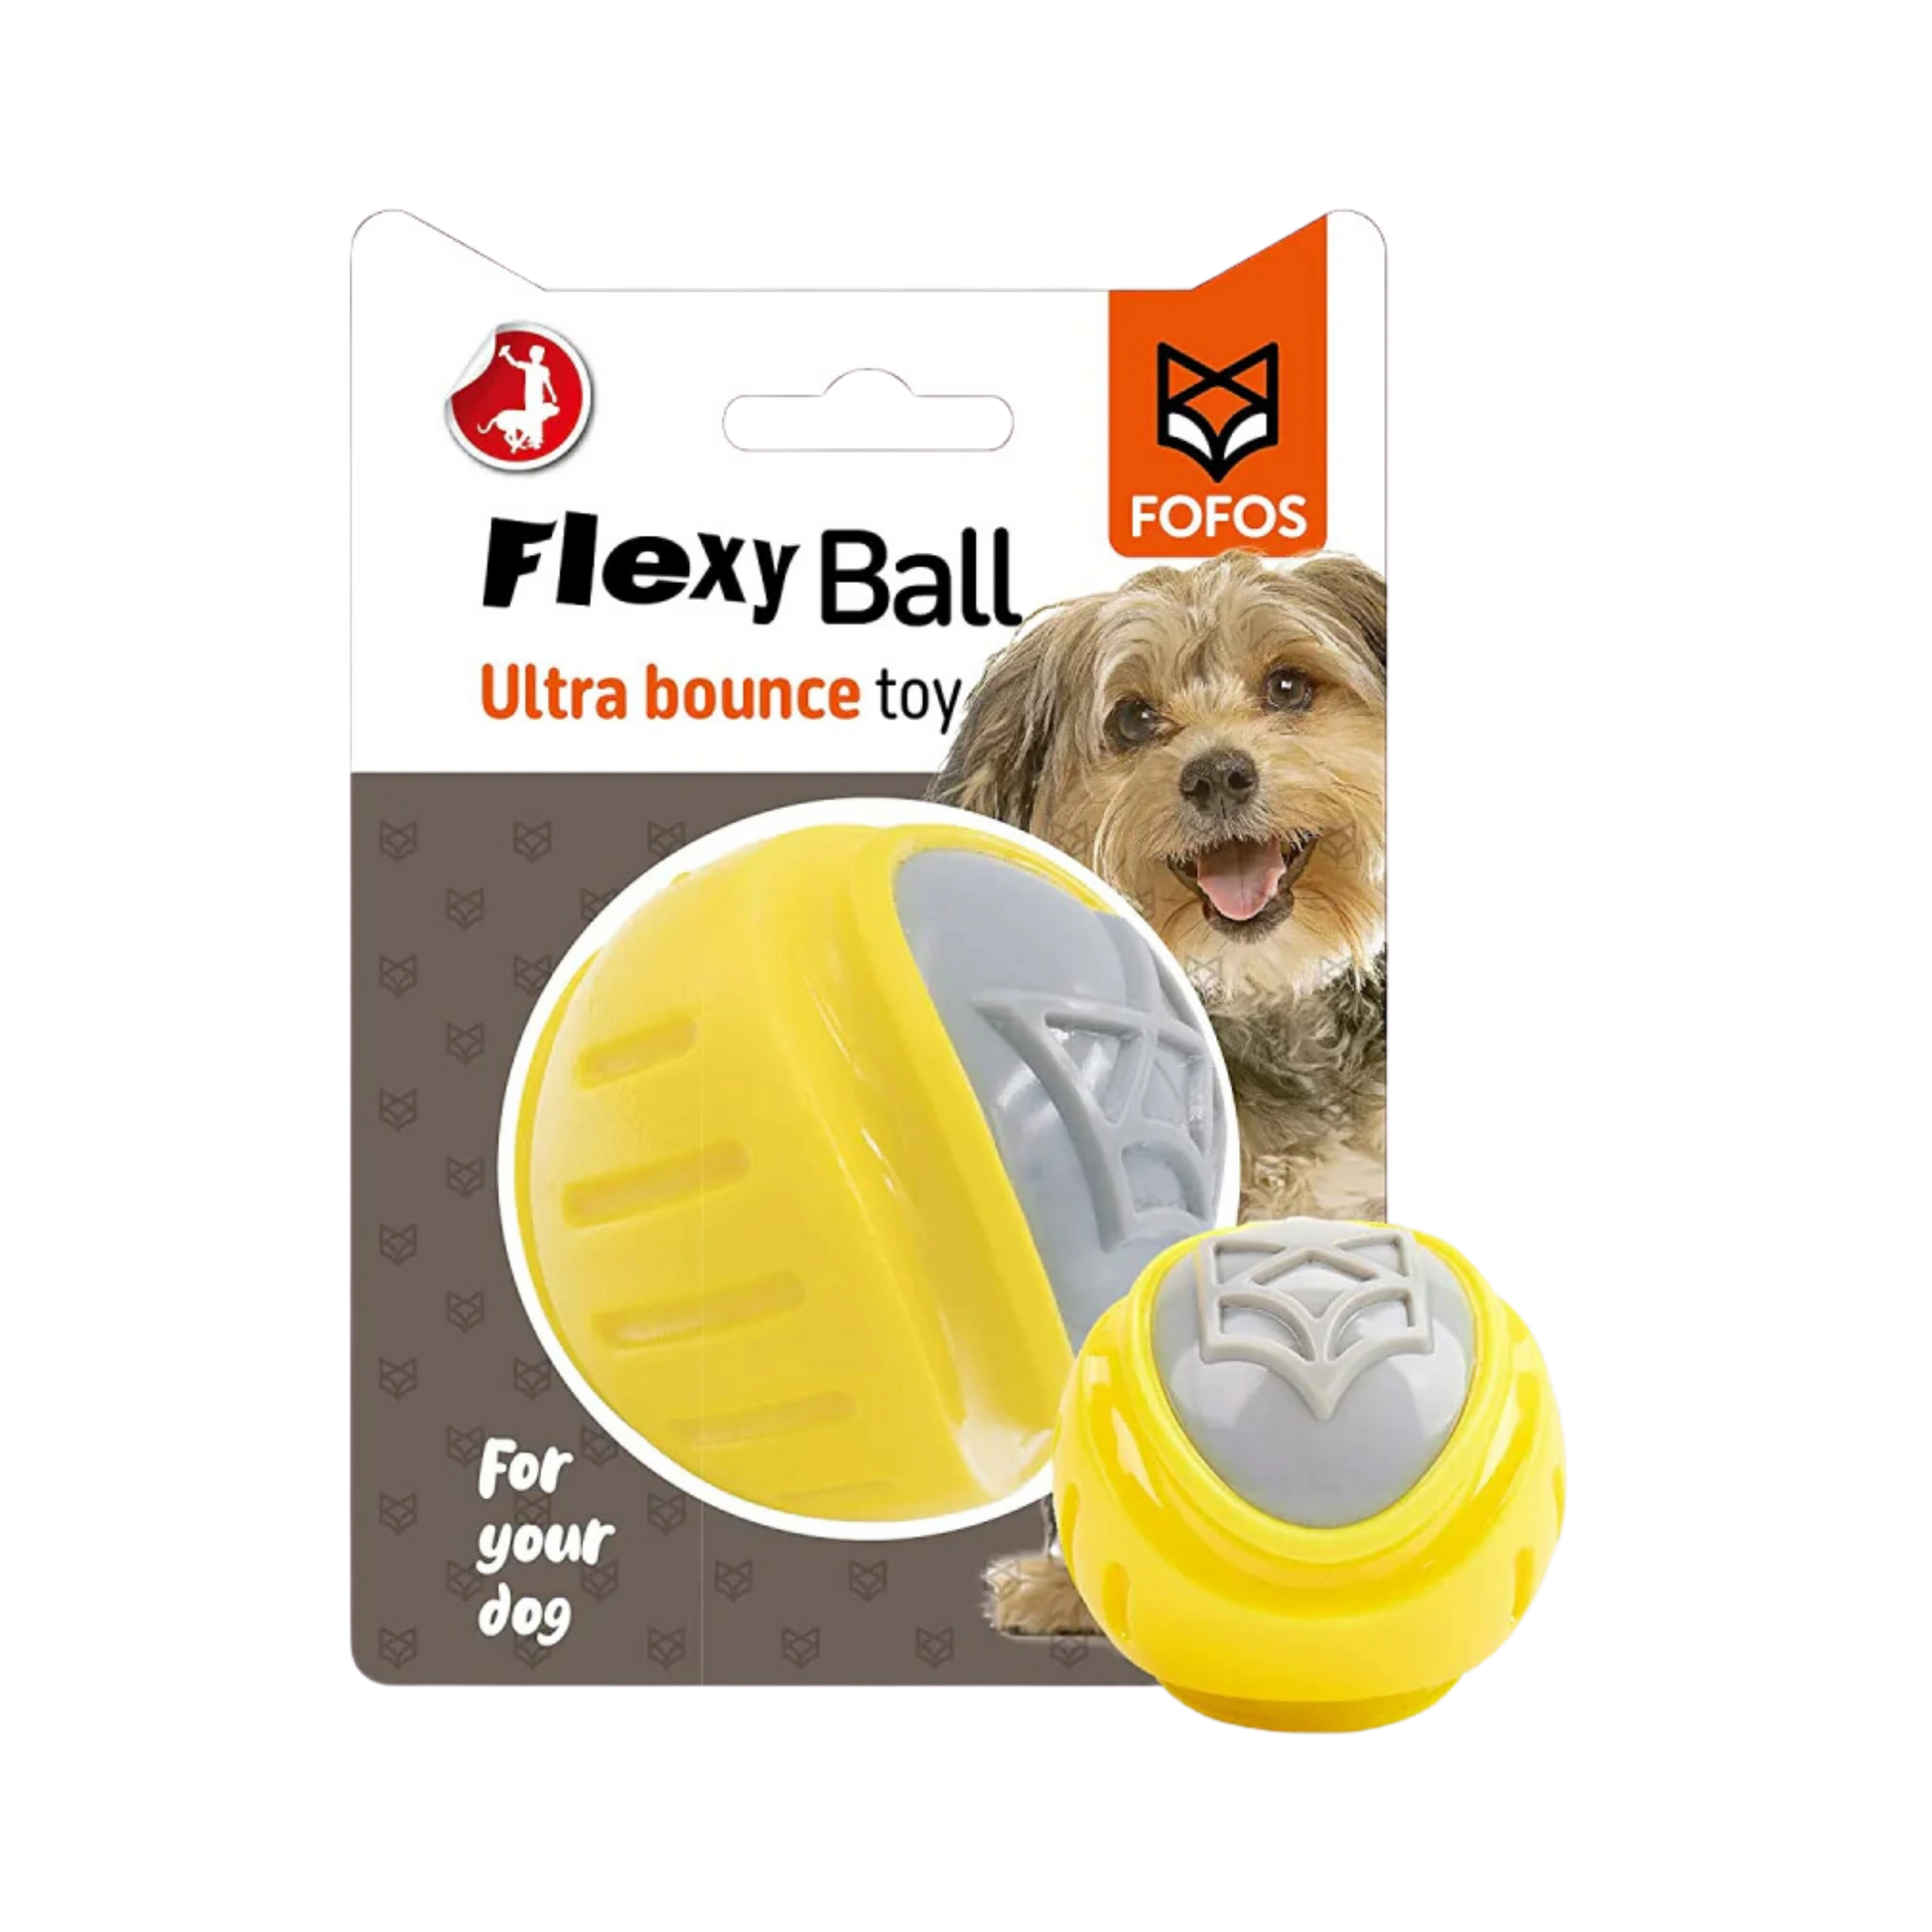 Fofos Flexy Ball Ultra Bounce Toy - Toys - Fofos - 12% Off